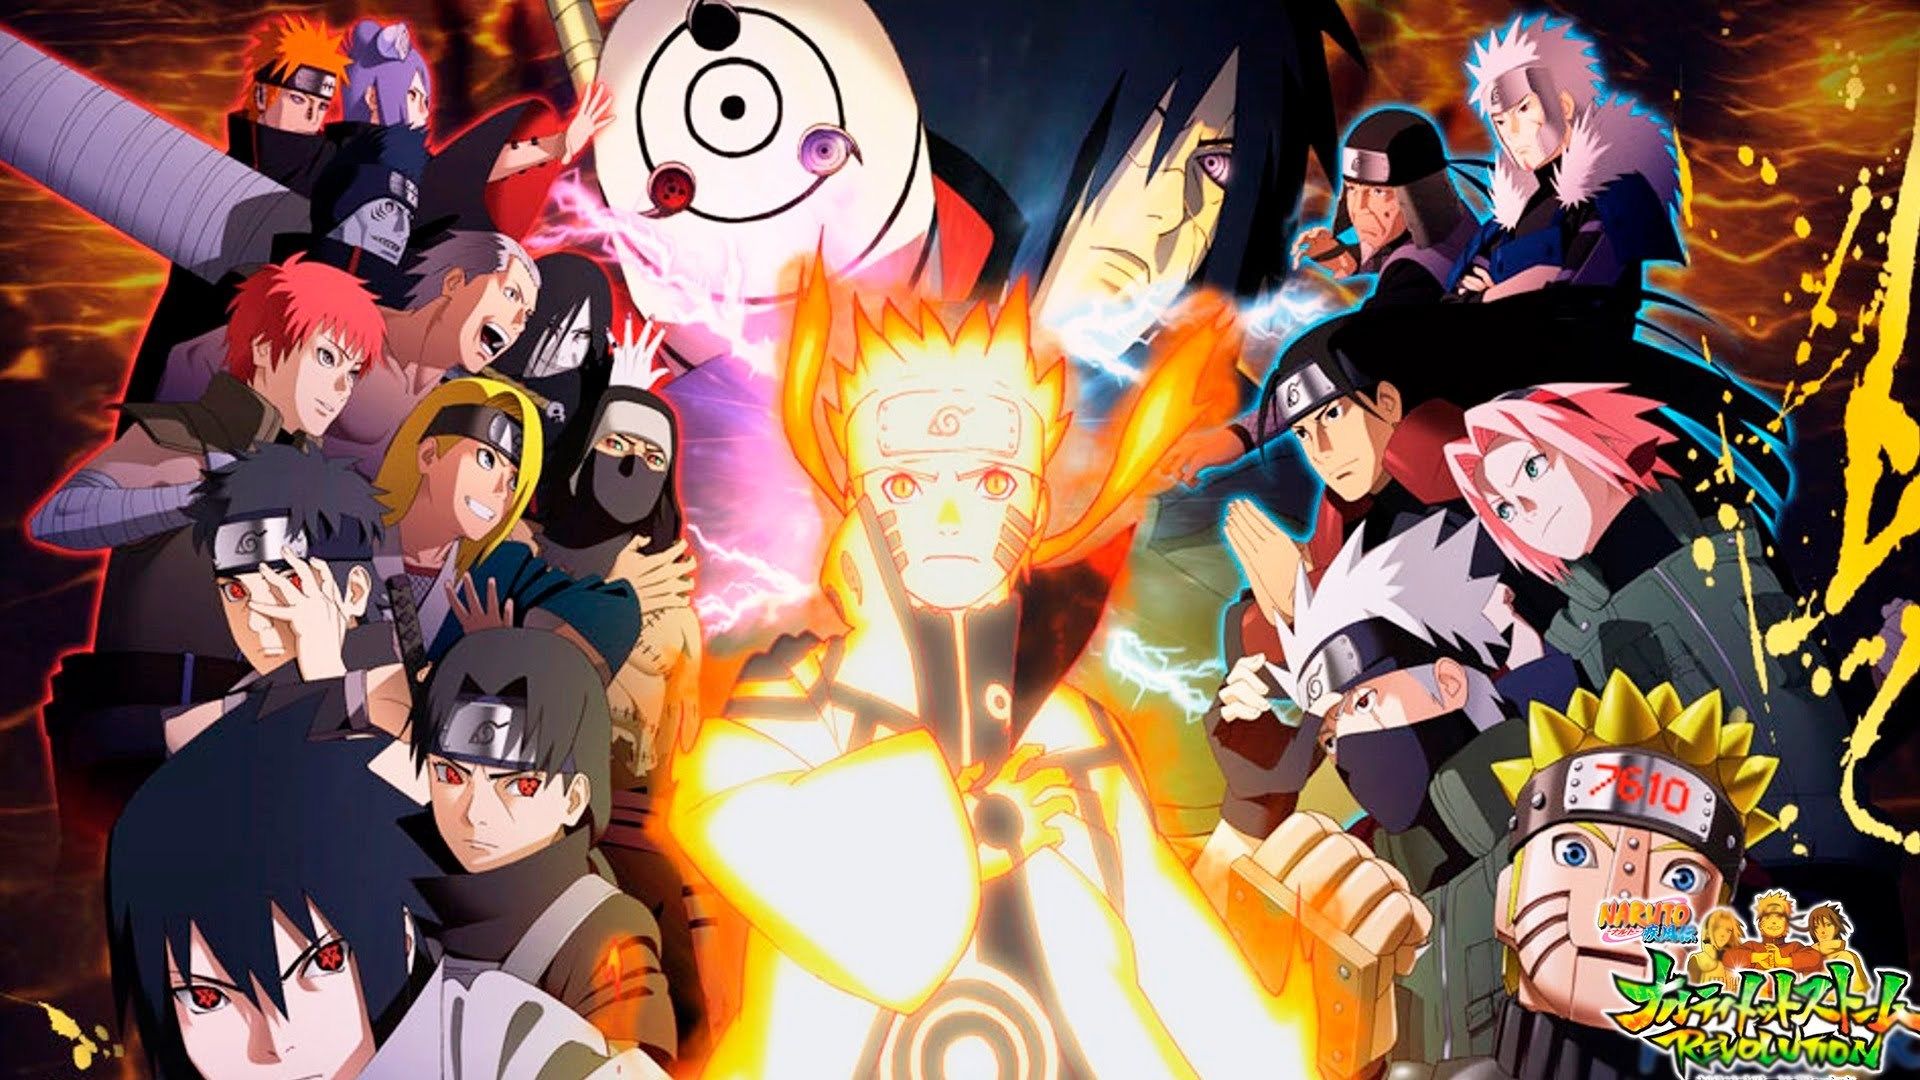 Hình nền Naruto cho máy tính sẽ giúp bạn tăng thêm động lực làm việc và giải trí. Những hình ảnh tuyệt đẹp của Naruto nổi bật trên màn hình máy tính sẽ khiến bạn thực sự thư giãn và thoải mái. Hãy cùng tận hưởng ngay thôi!